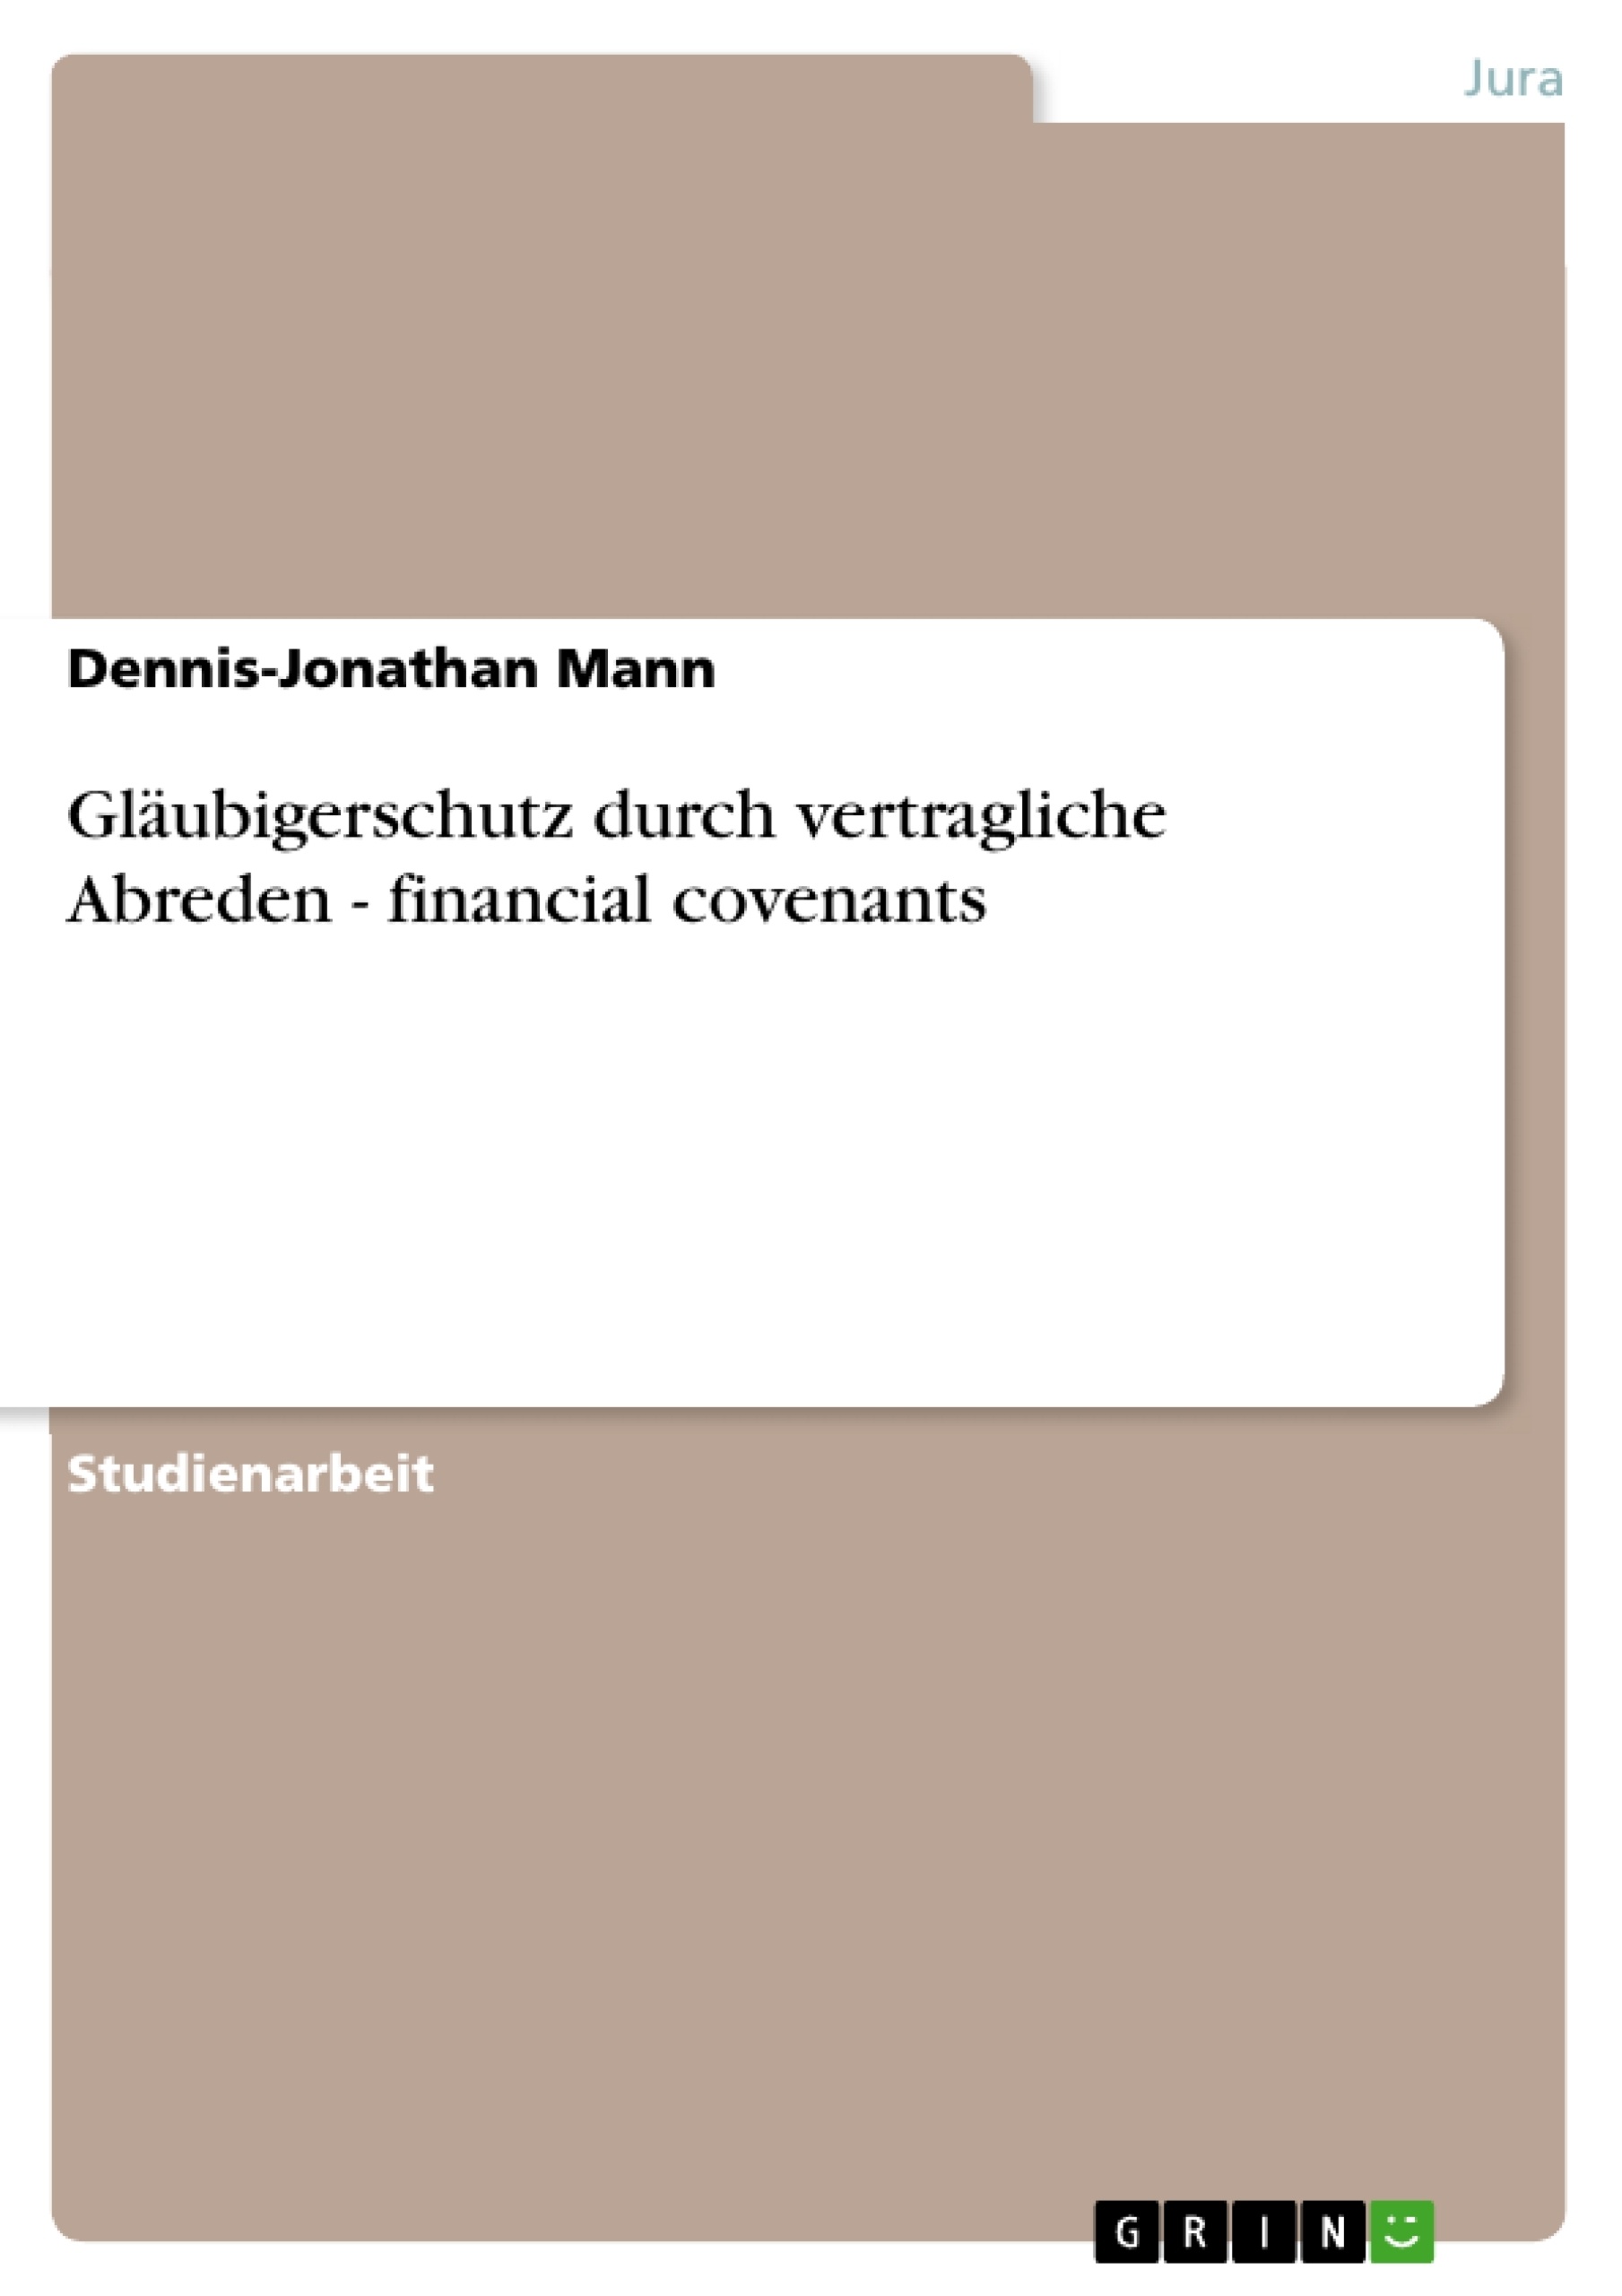 Título: Gläubigerschutz durch vertragliche Abreden   - financial covenants